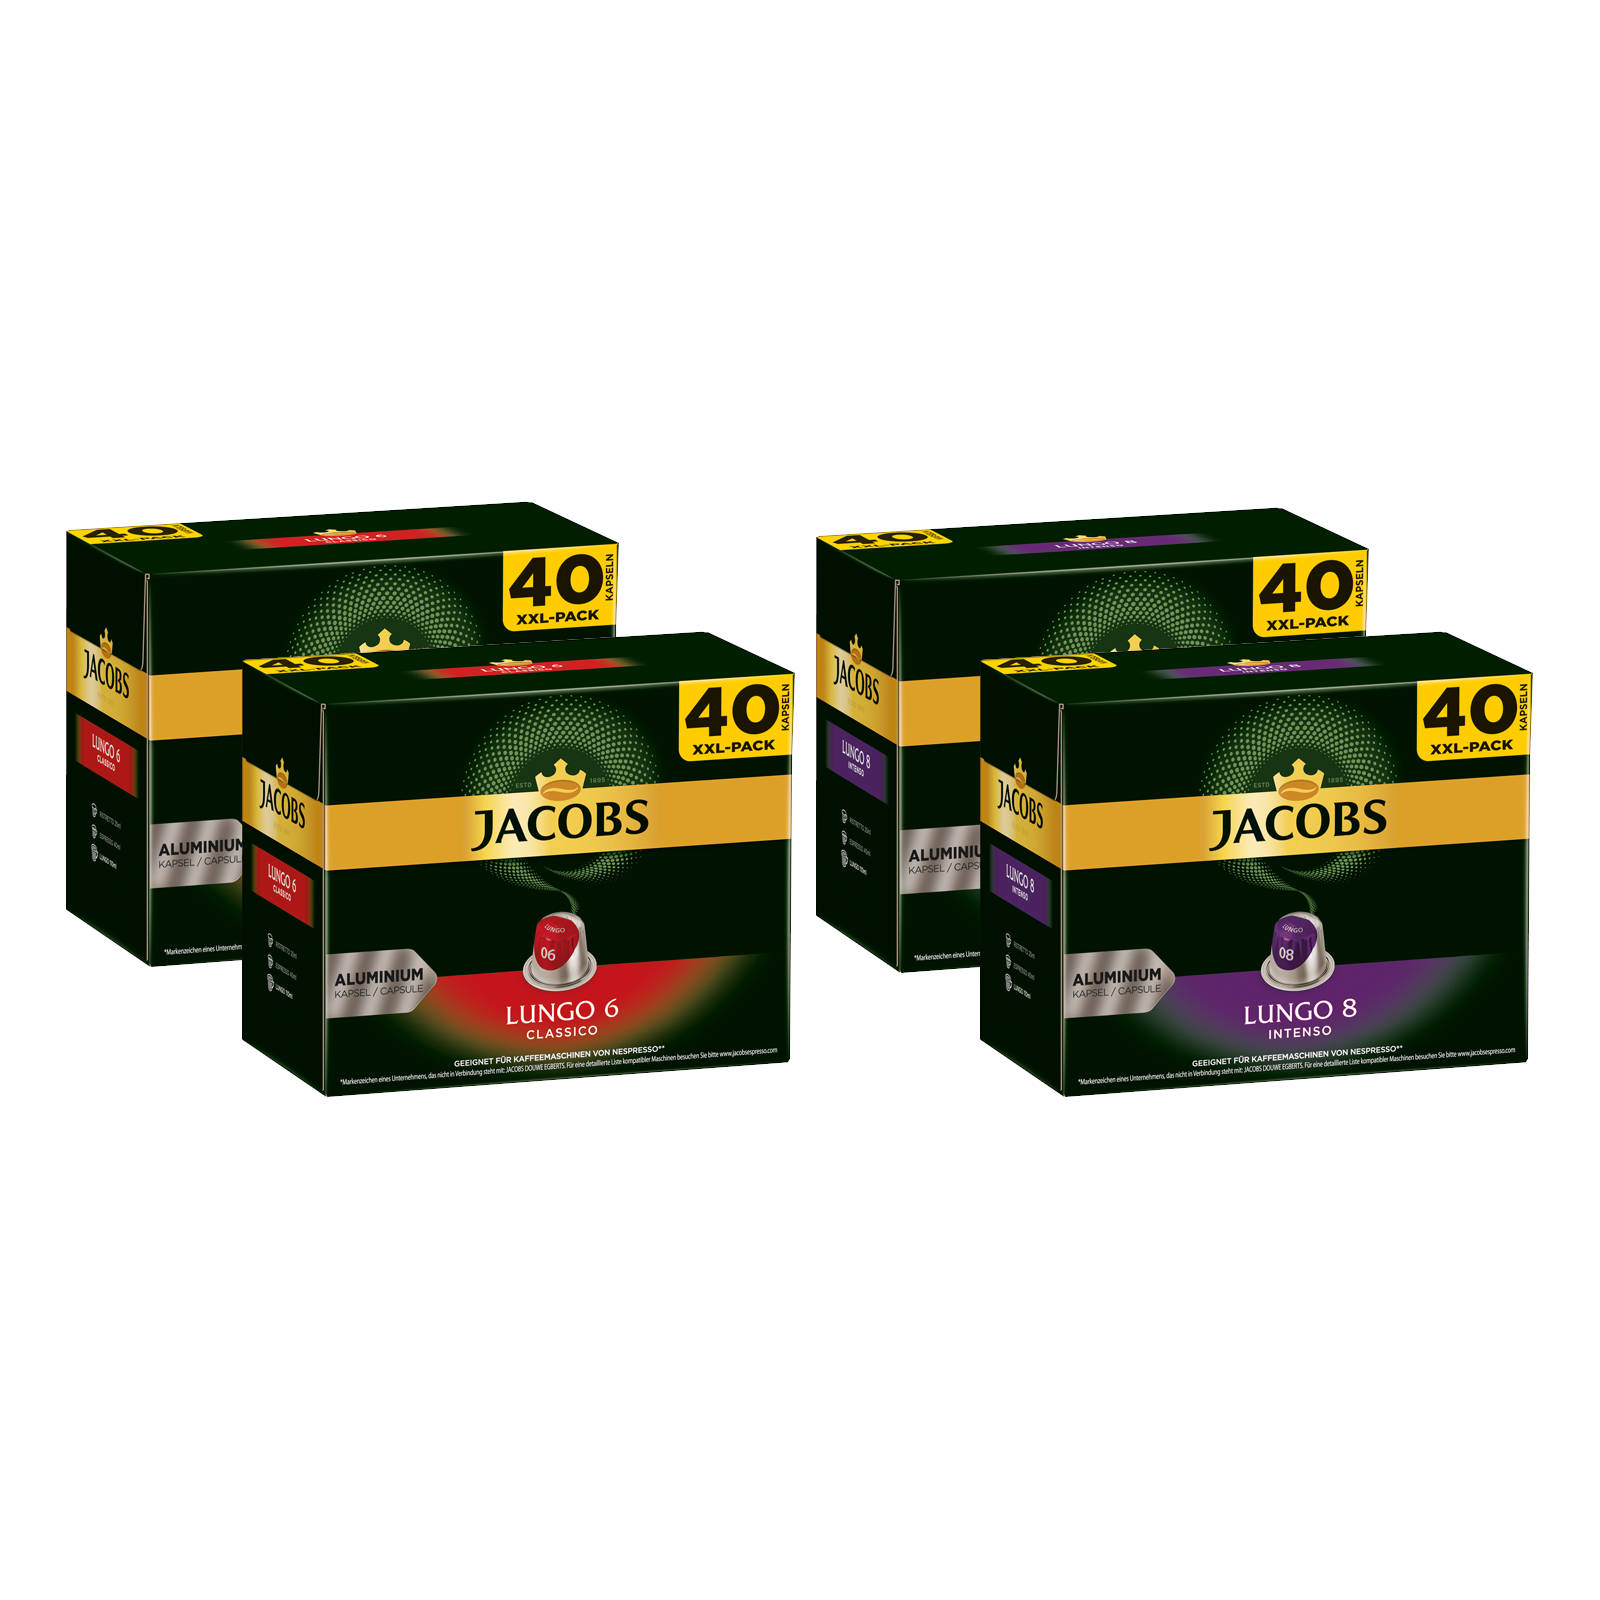 6 8 Lungo Lungo kompatible Classico Nespresso®* XXL-Packs Kaffeekapseln JACOBS Intenso System) (Nespresso 160 +